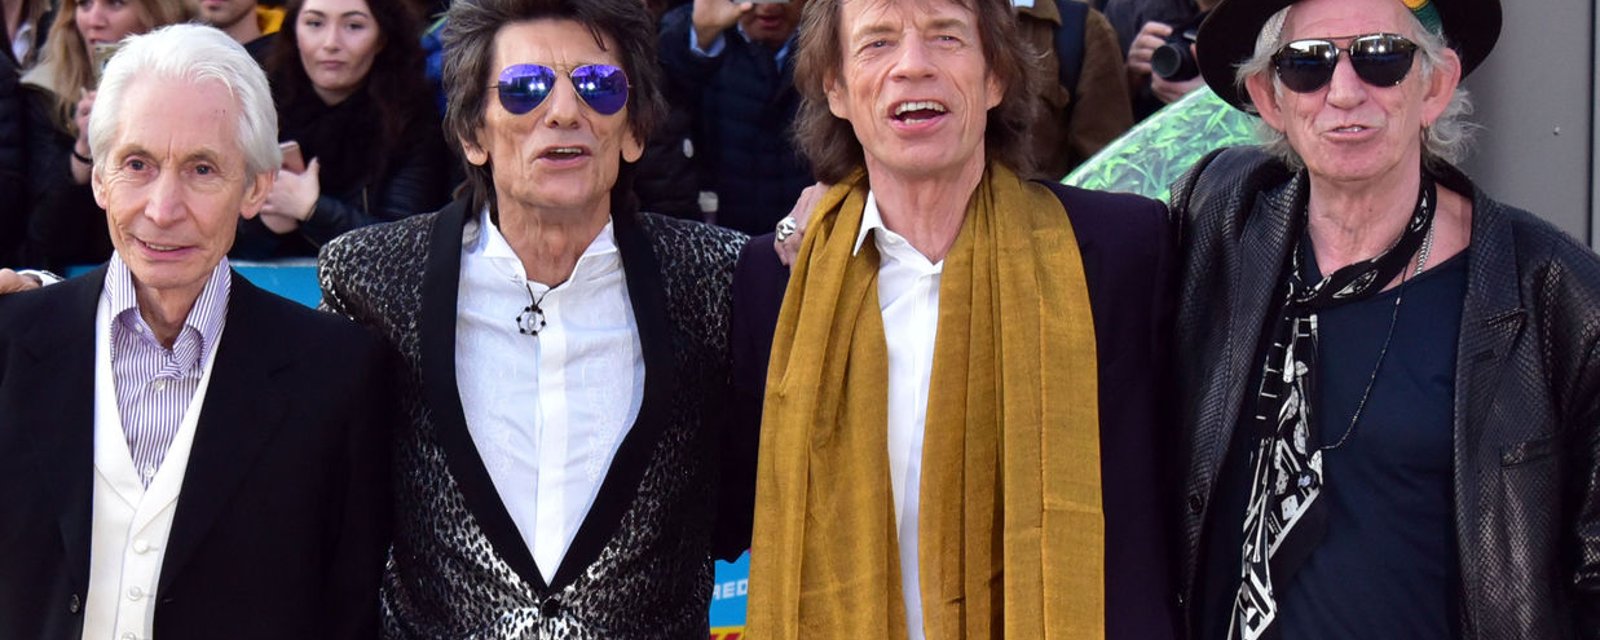 Les Rolling Stones débarquent chez MondeDeStars! Vous avez bien lu! #VidéoViral